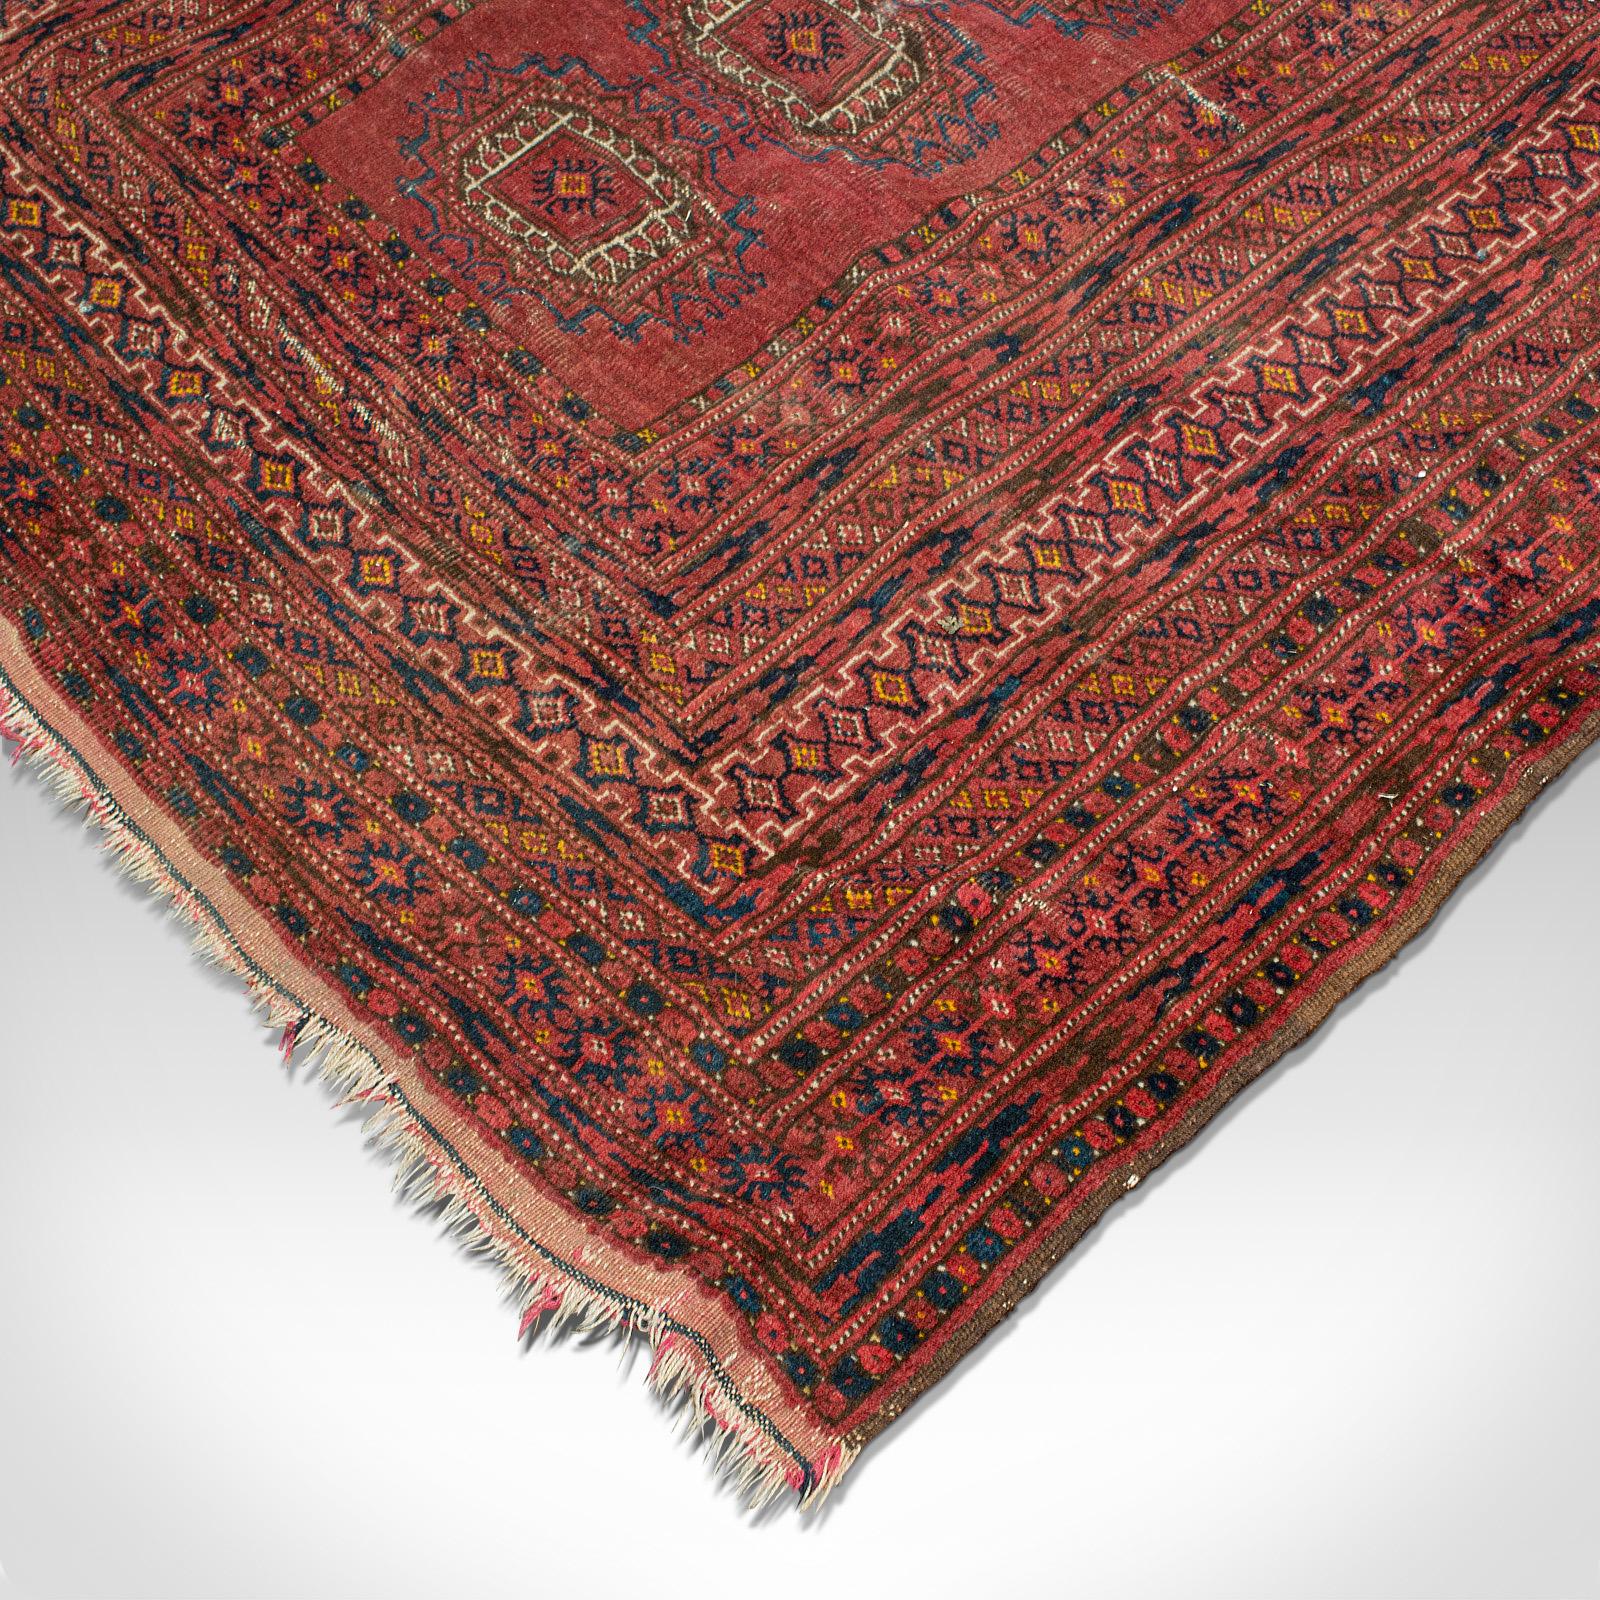 Textile Antique Turkoman Rug, Middle Eastern, Woven Dozar, Decorative Carpet, Circa 1920 For Sale